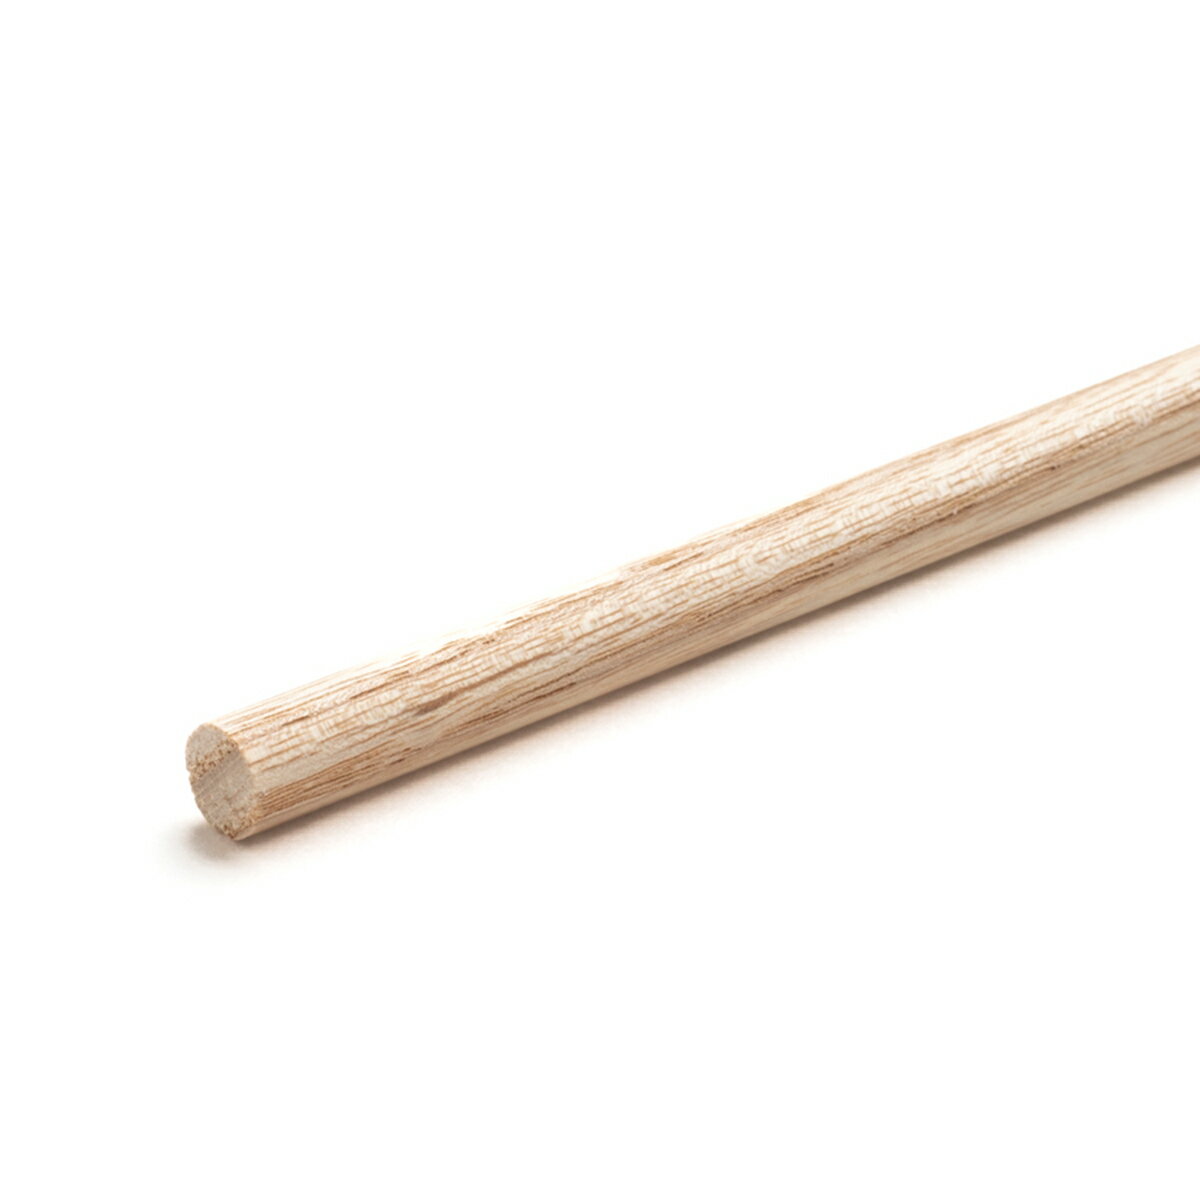 ホワイトアッシュ丸棒 直径8mm 910mm 1820mm DIY 木材 DIY用丸棒材 クラフト用丸棒 ウッドカービング用材 ウッドクラフト材料 高品質アッシュ丸棒